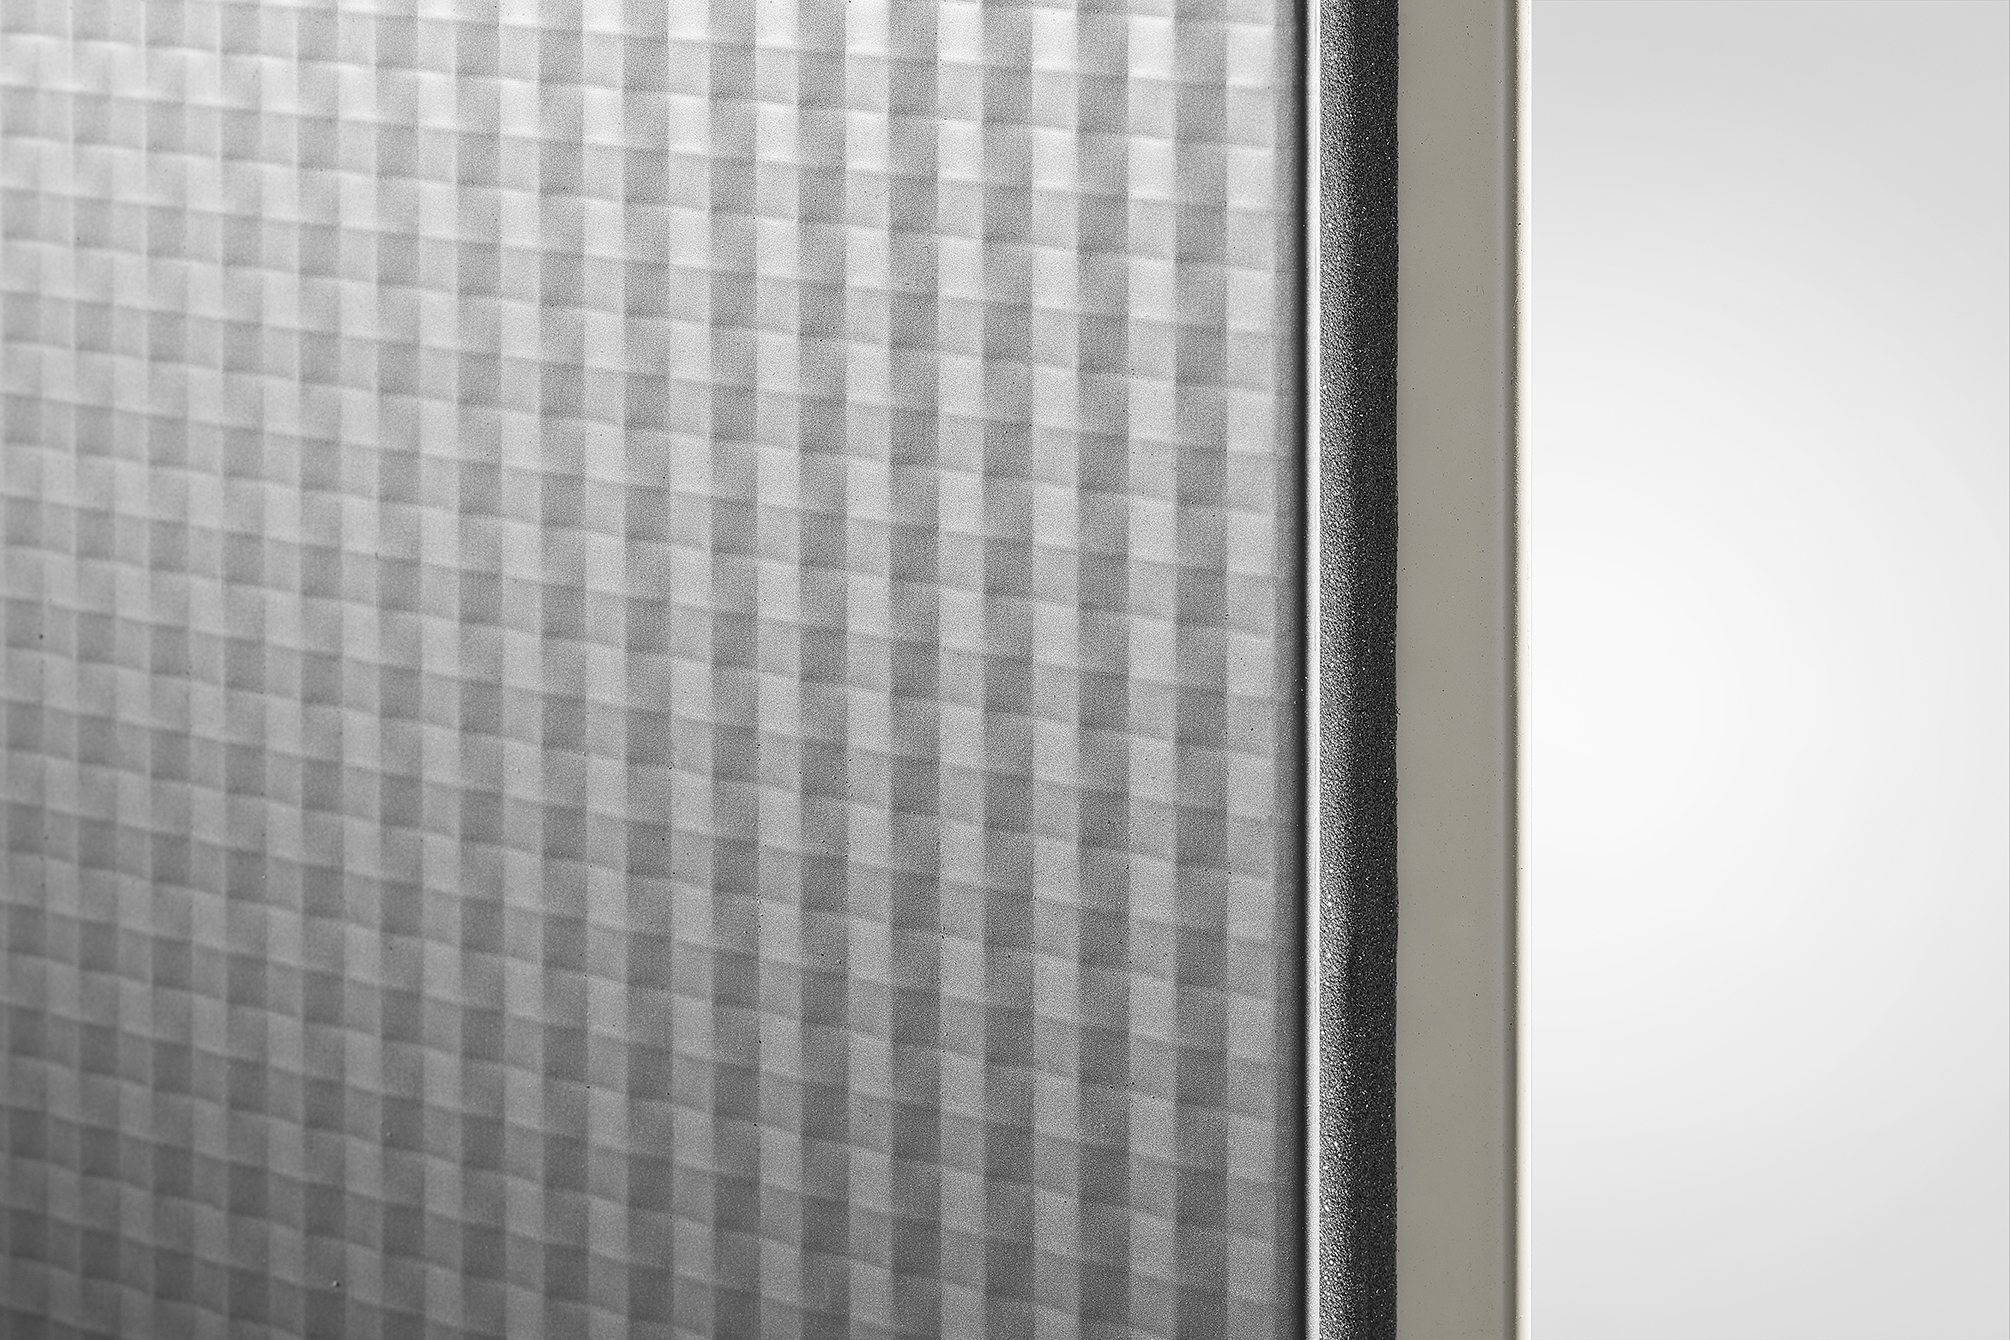 Emerald y Diamond: los nuevos acabados estéticos de los paneles sándwich Isopan para fachadas y particiones interiores